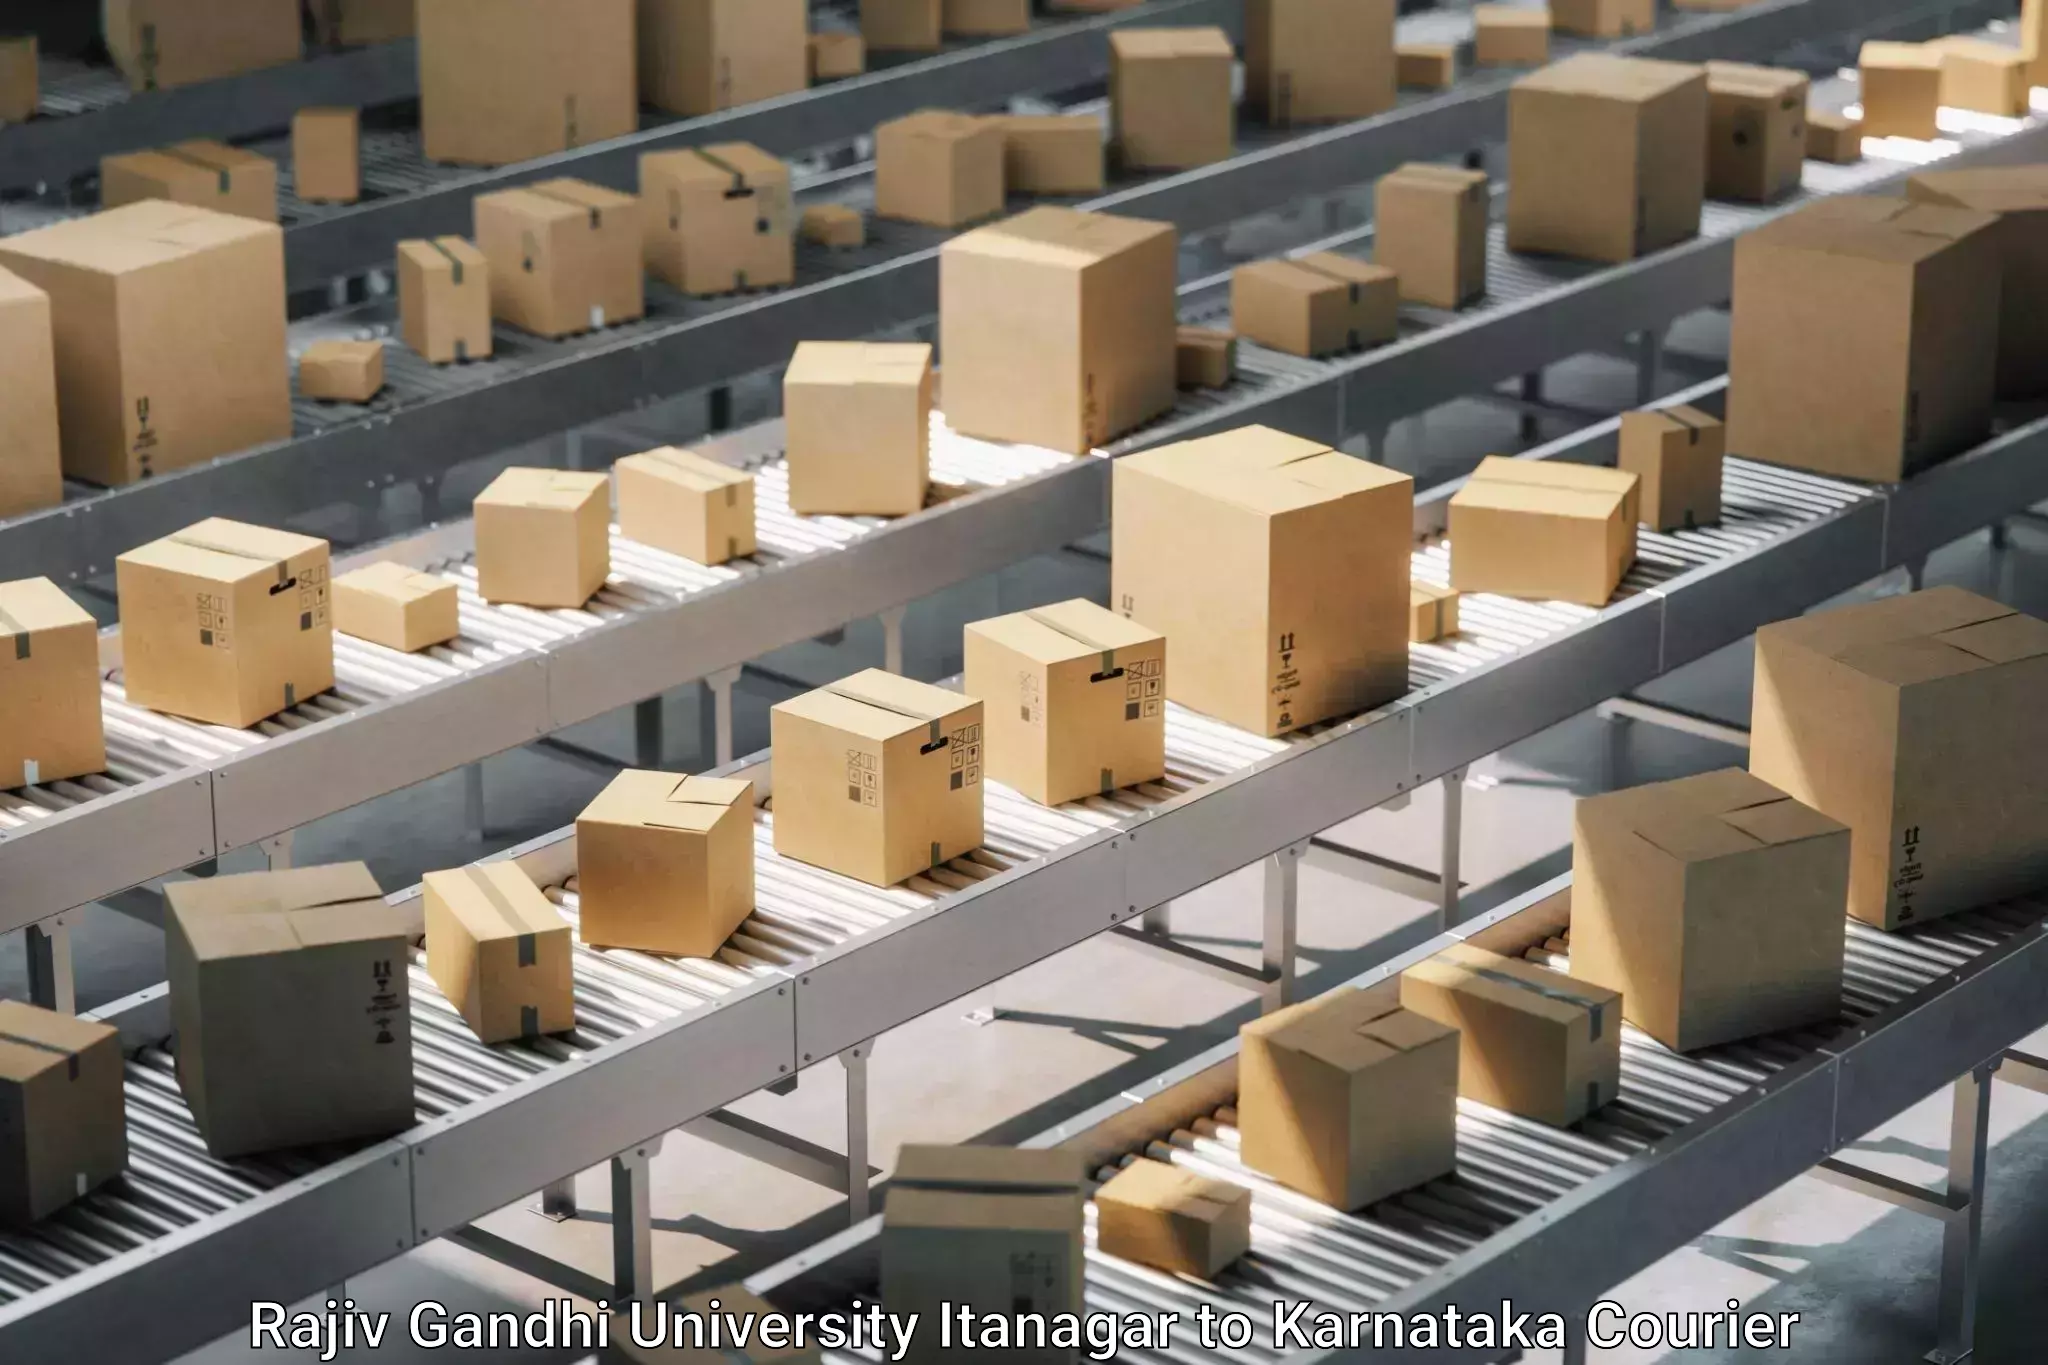 Furniture moving plans Rajiv Gandhi University Itanagar to Yellare